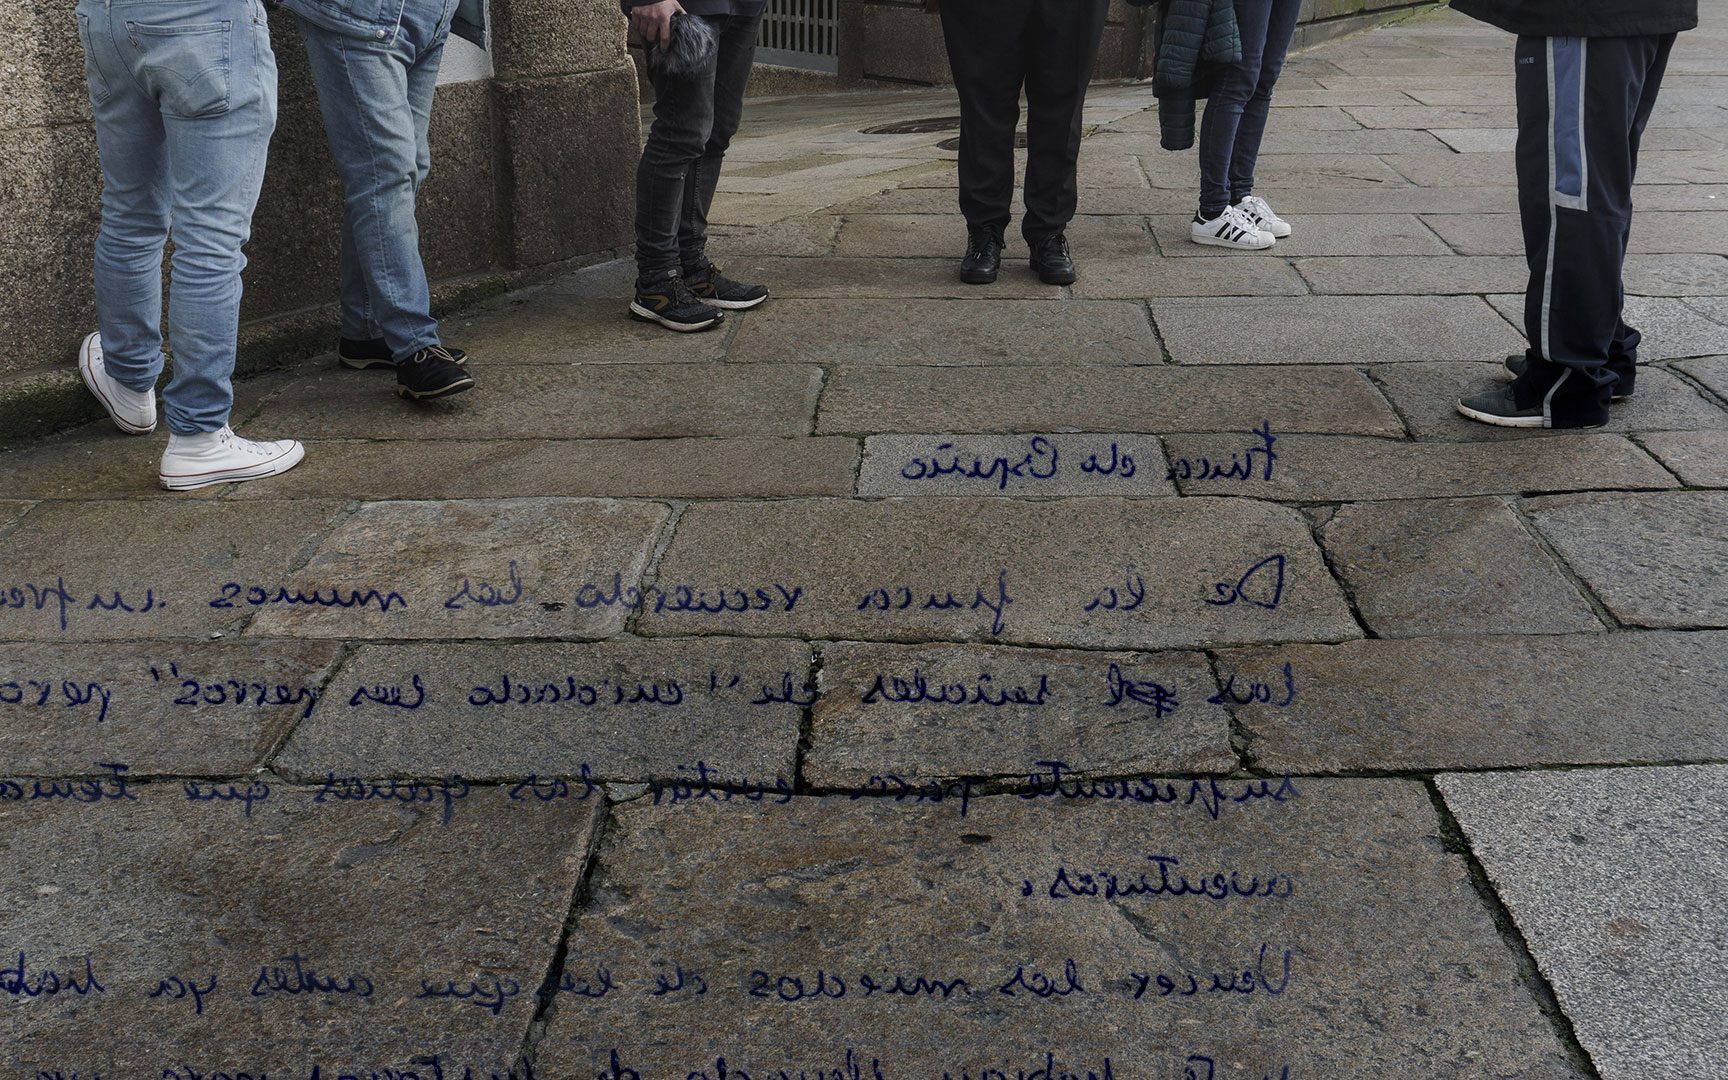 Composición fotográfica de una carta escrita a mano sobre el plano cortado de personas conversando